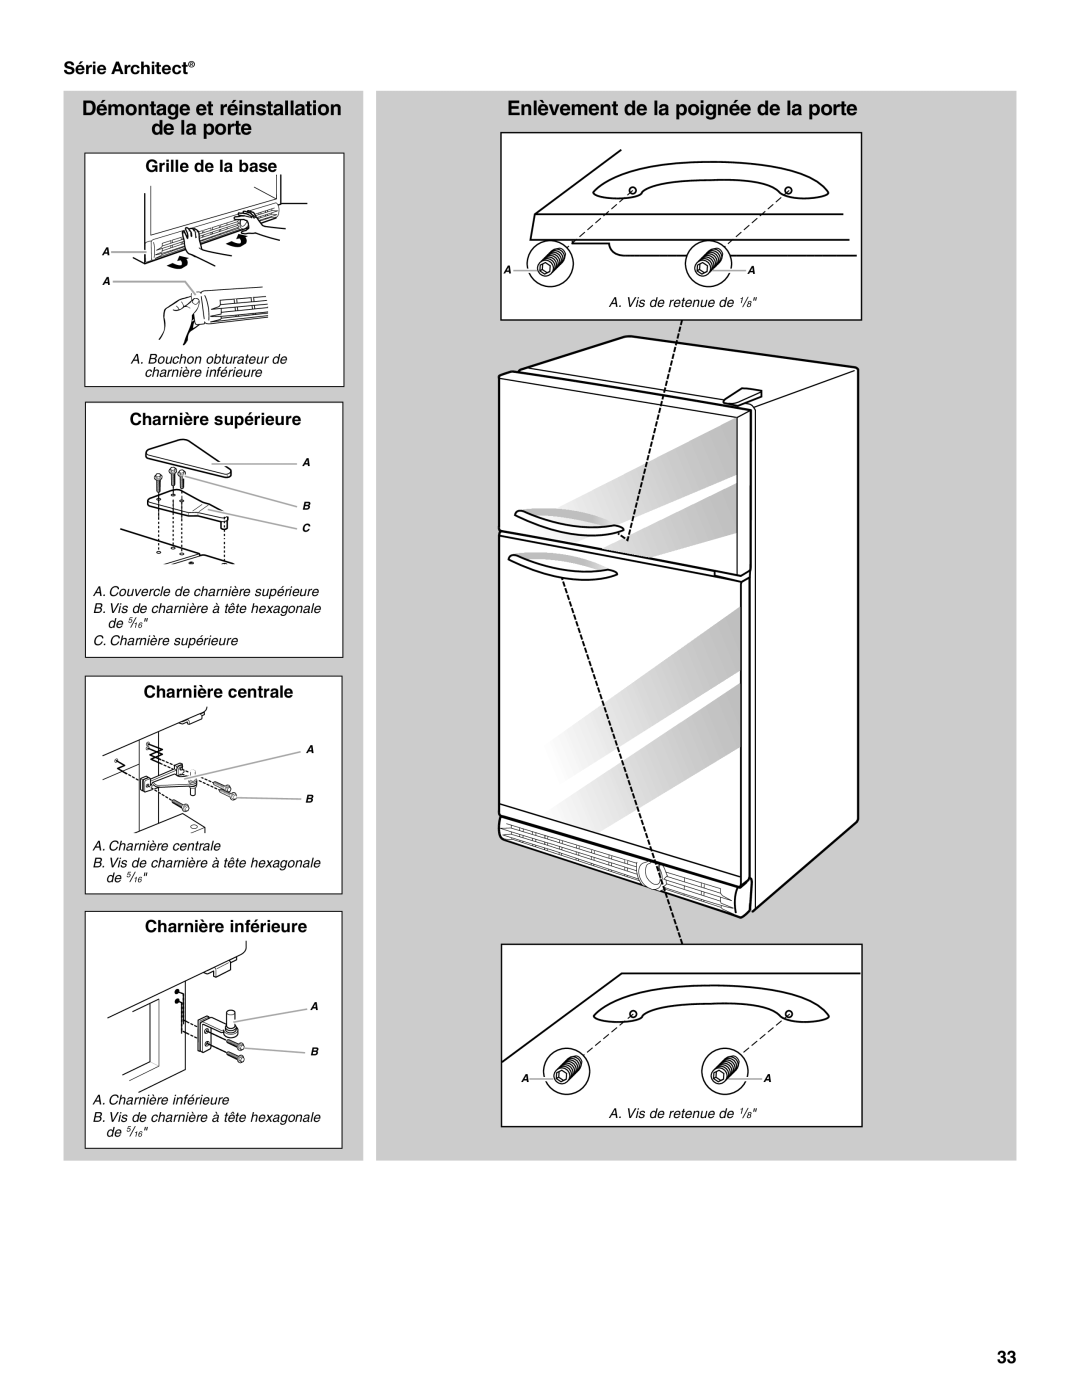 KitchenAid TOP-MOUNT REFRIGERATOR manual Enlèvement de la poignée de la porte, Série Architect, Grille de la base 